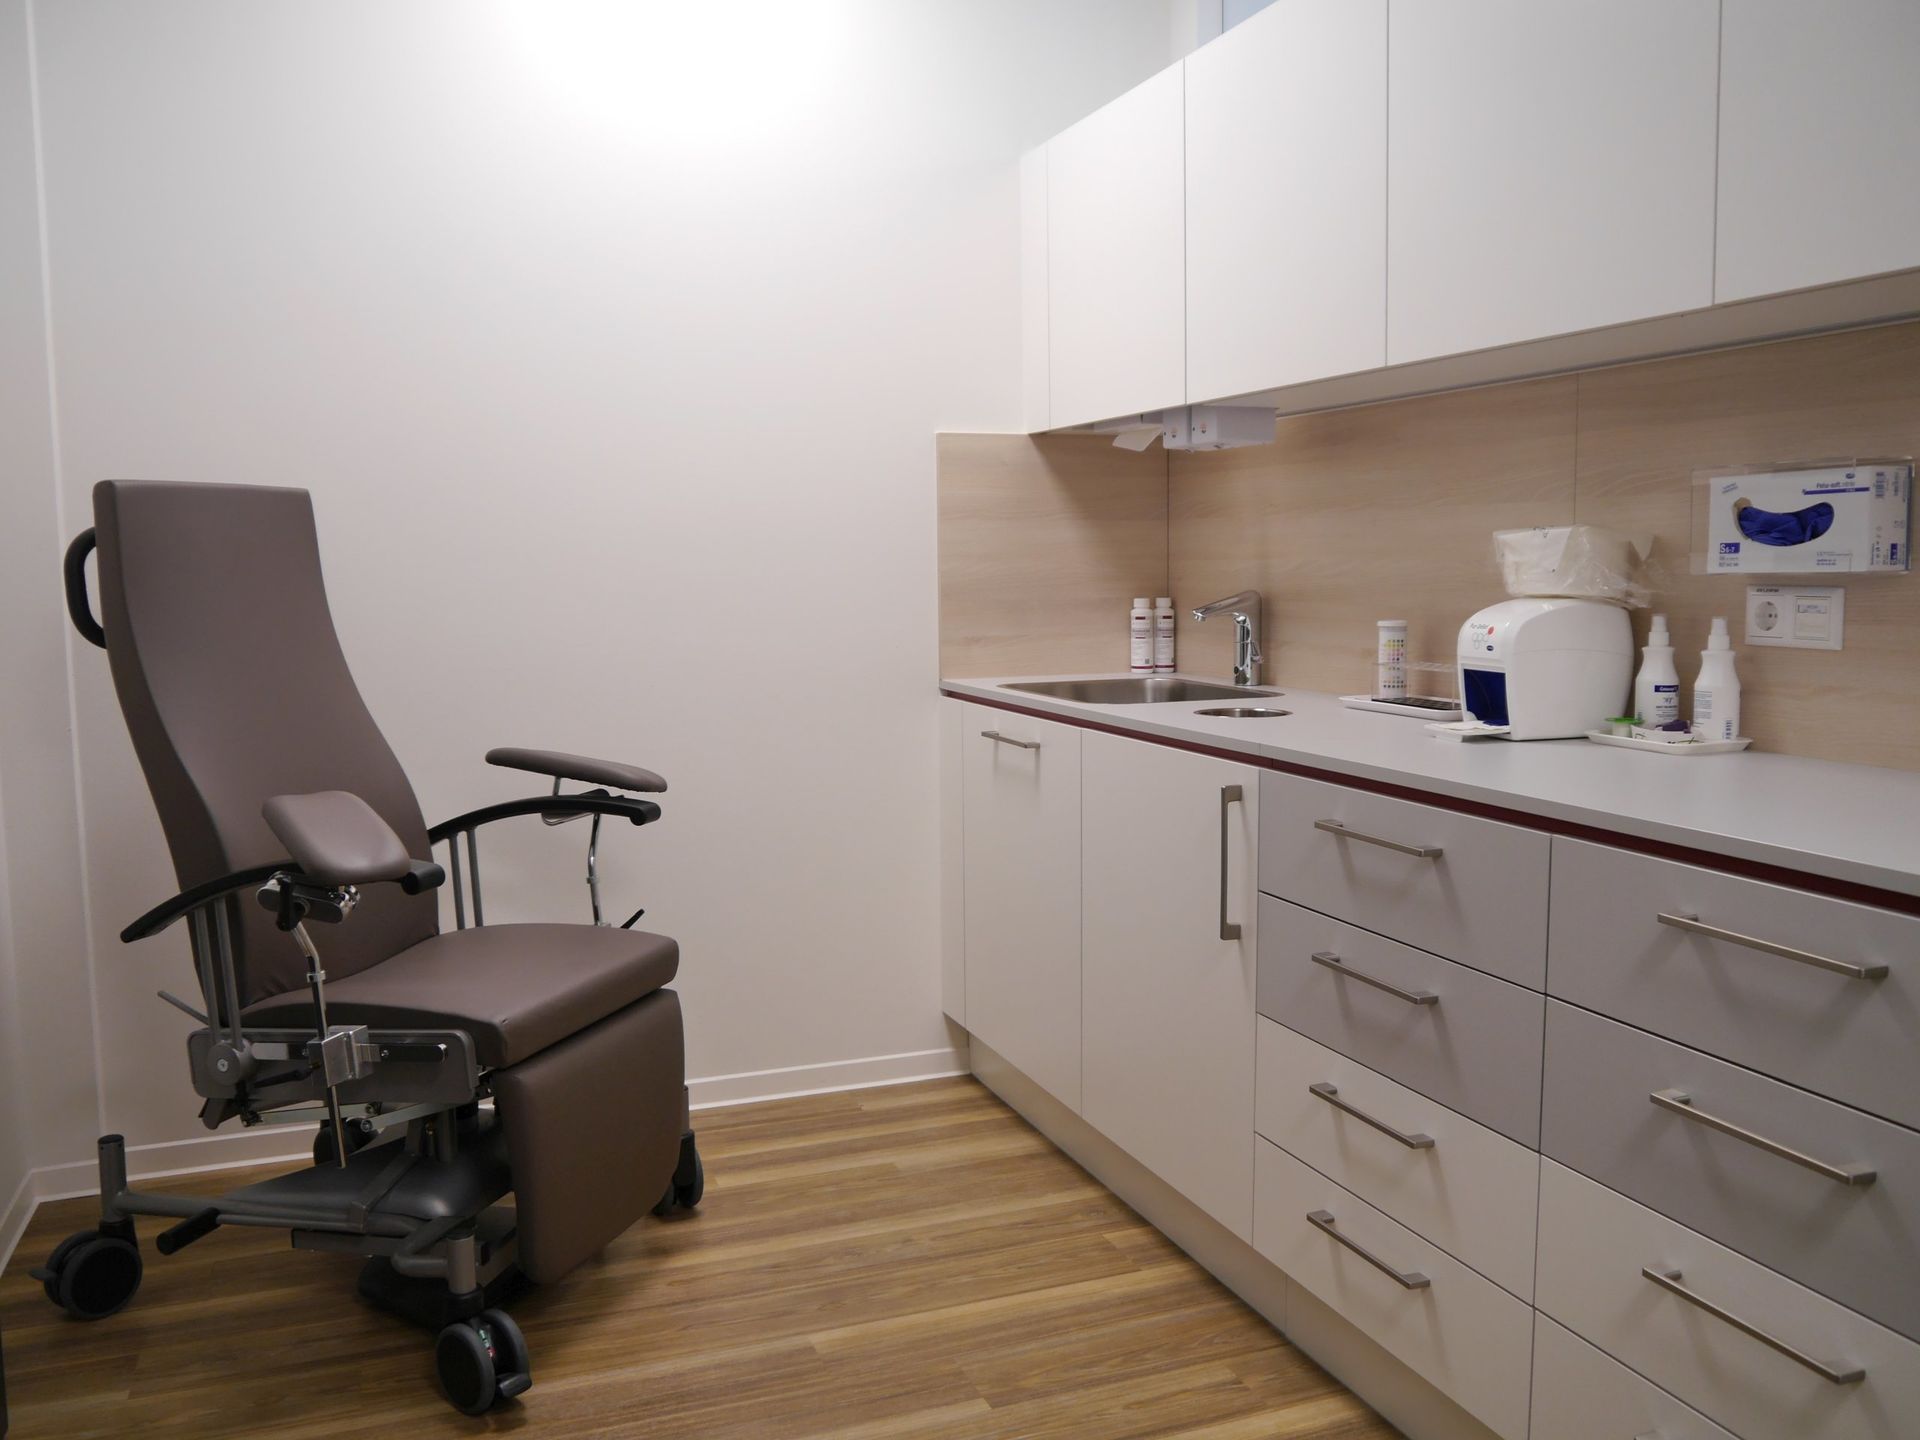 Medizinischer Raum in einer Hausarztpraxis